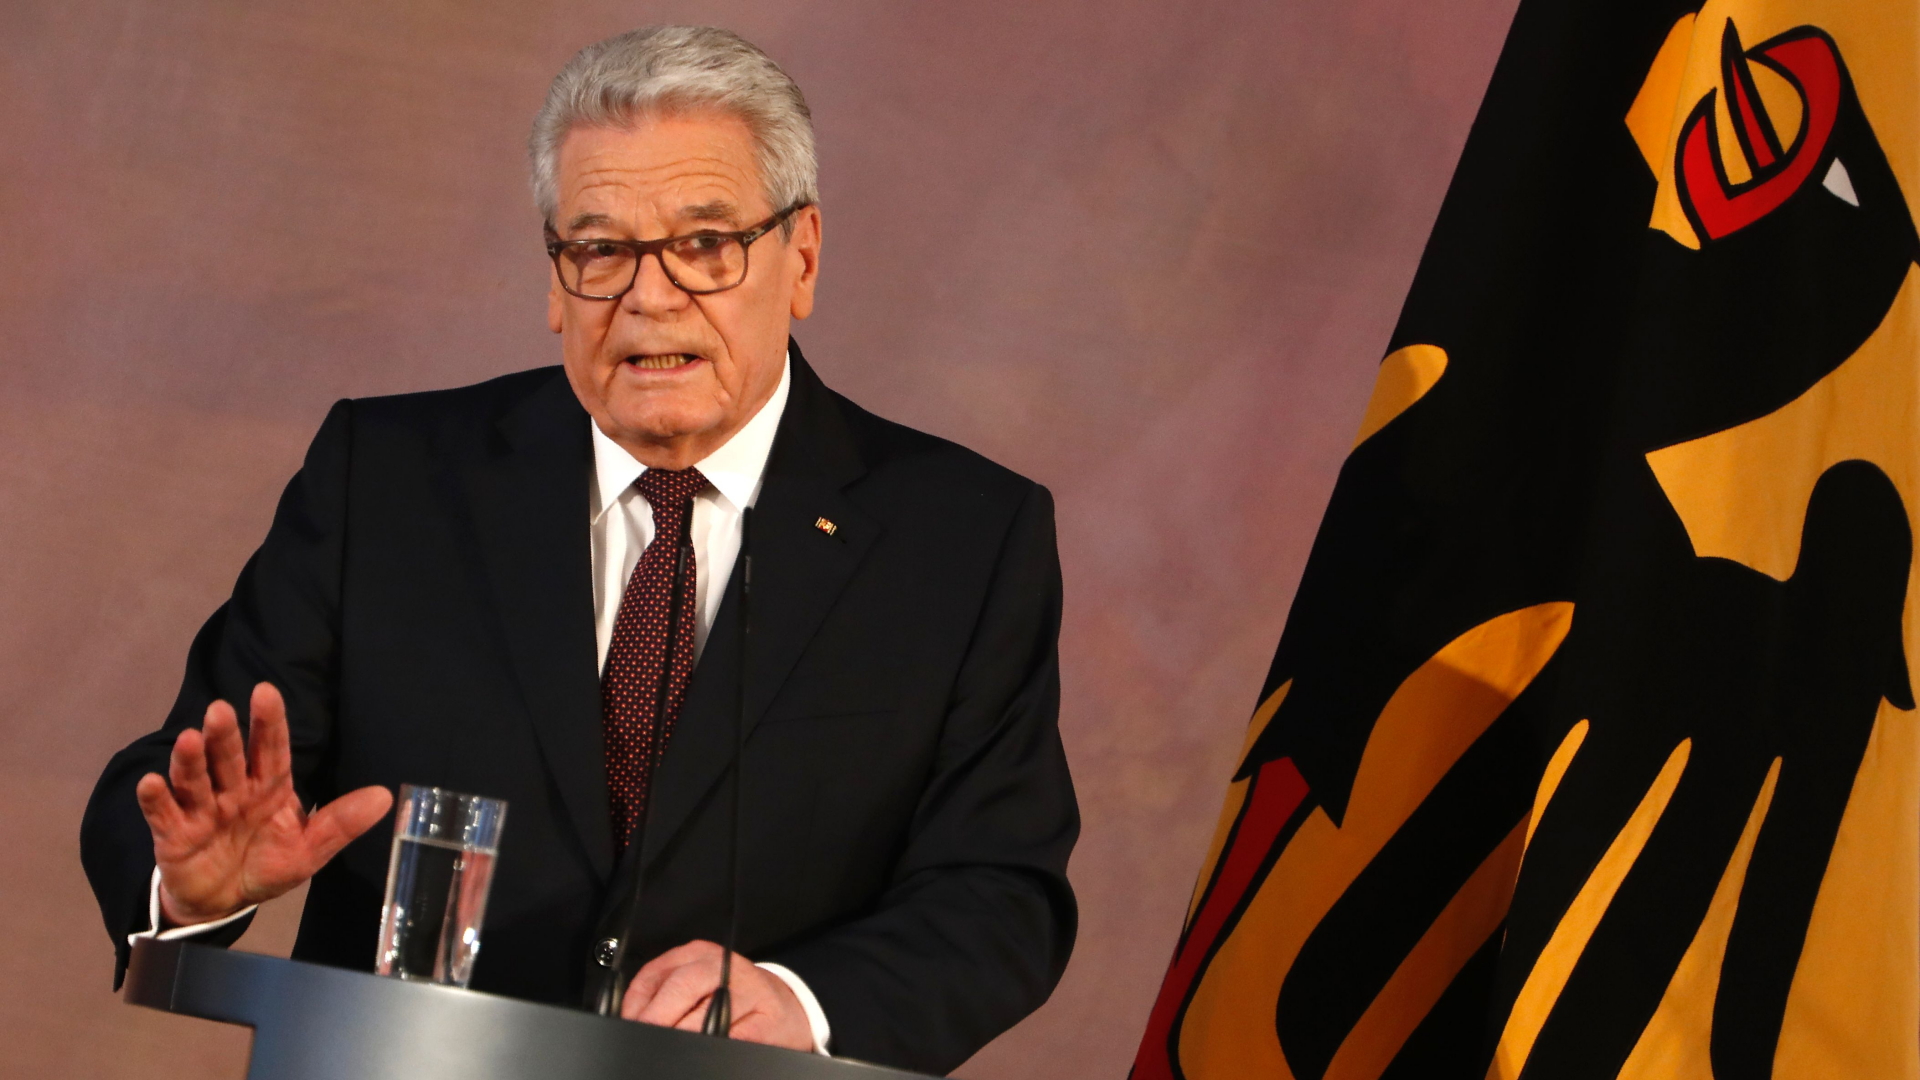 Bundespräsident Gauck bei einer Rede zum Ende seiner Amtszeit